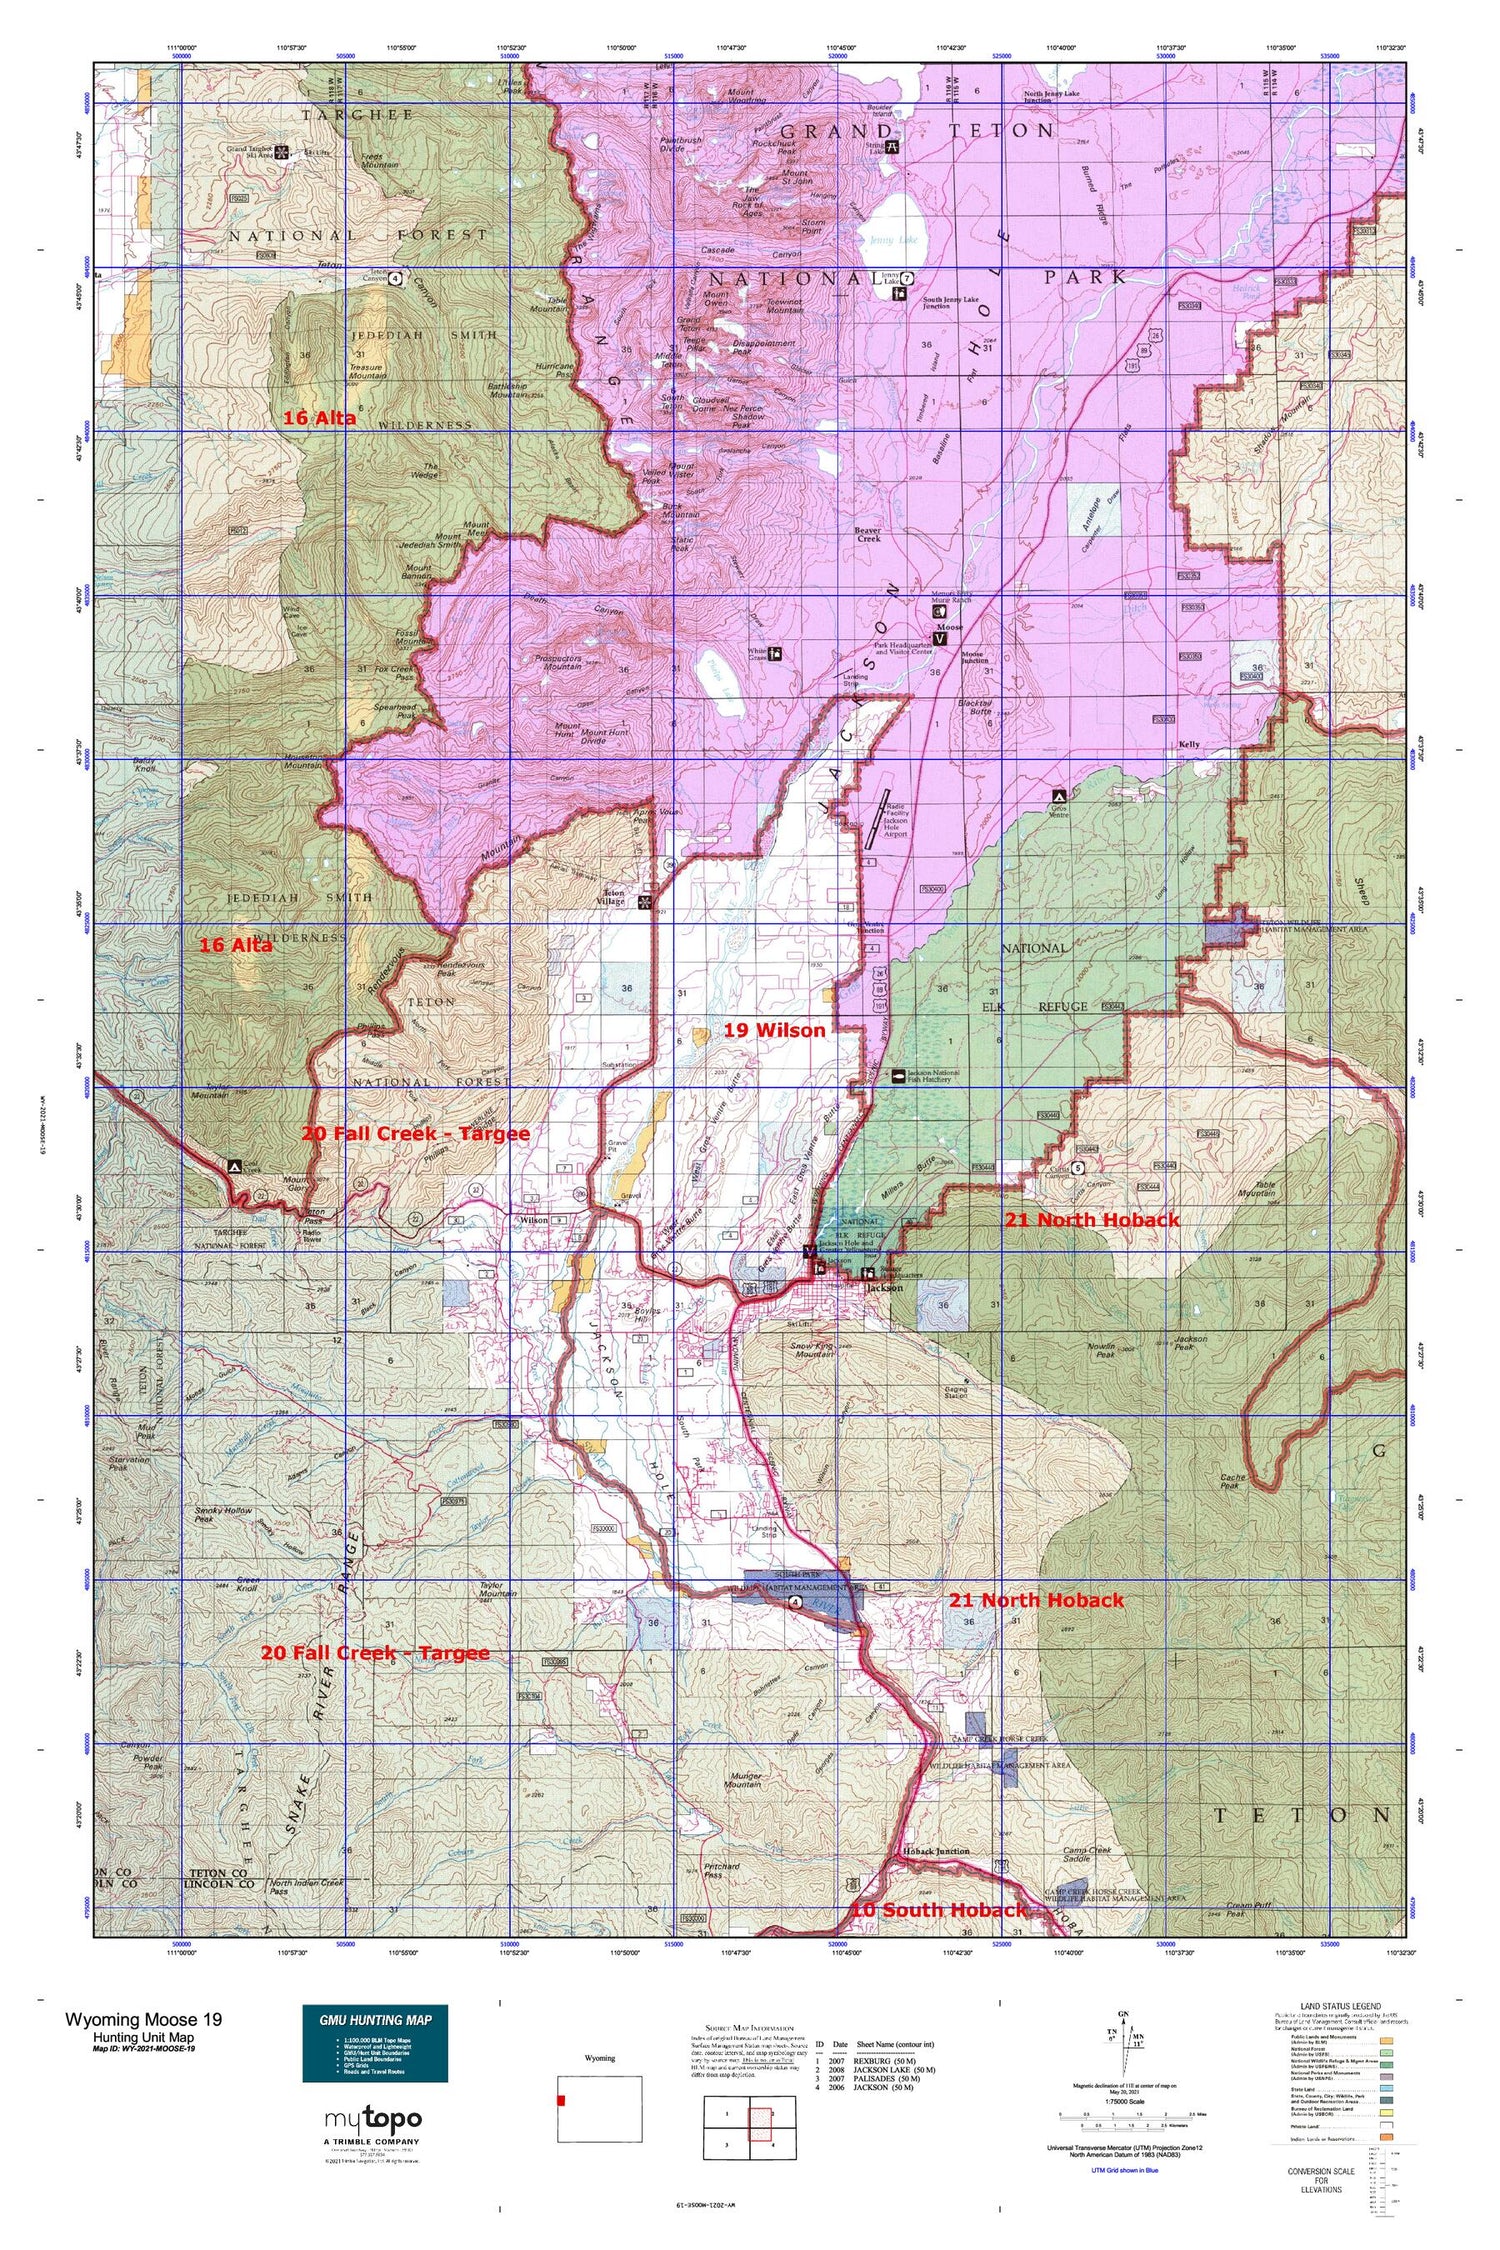 Wyoming Moose 19 Map Image